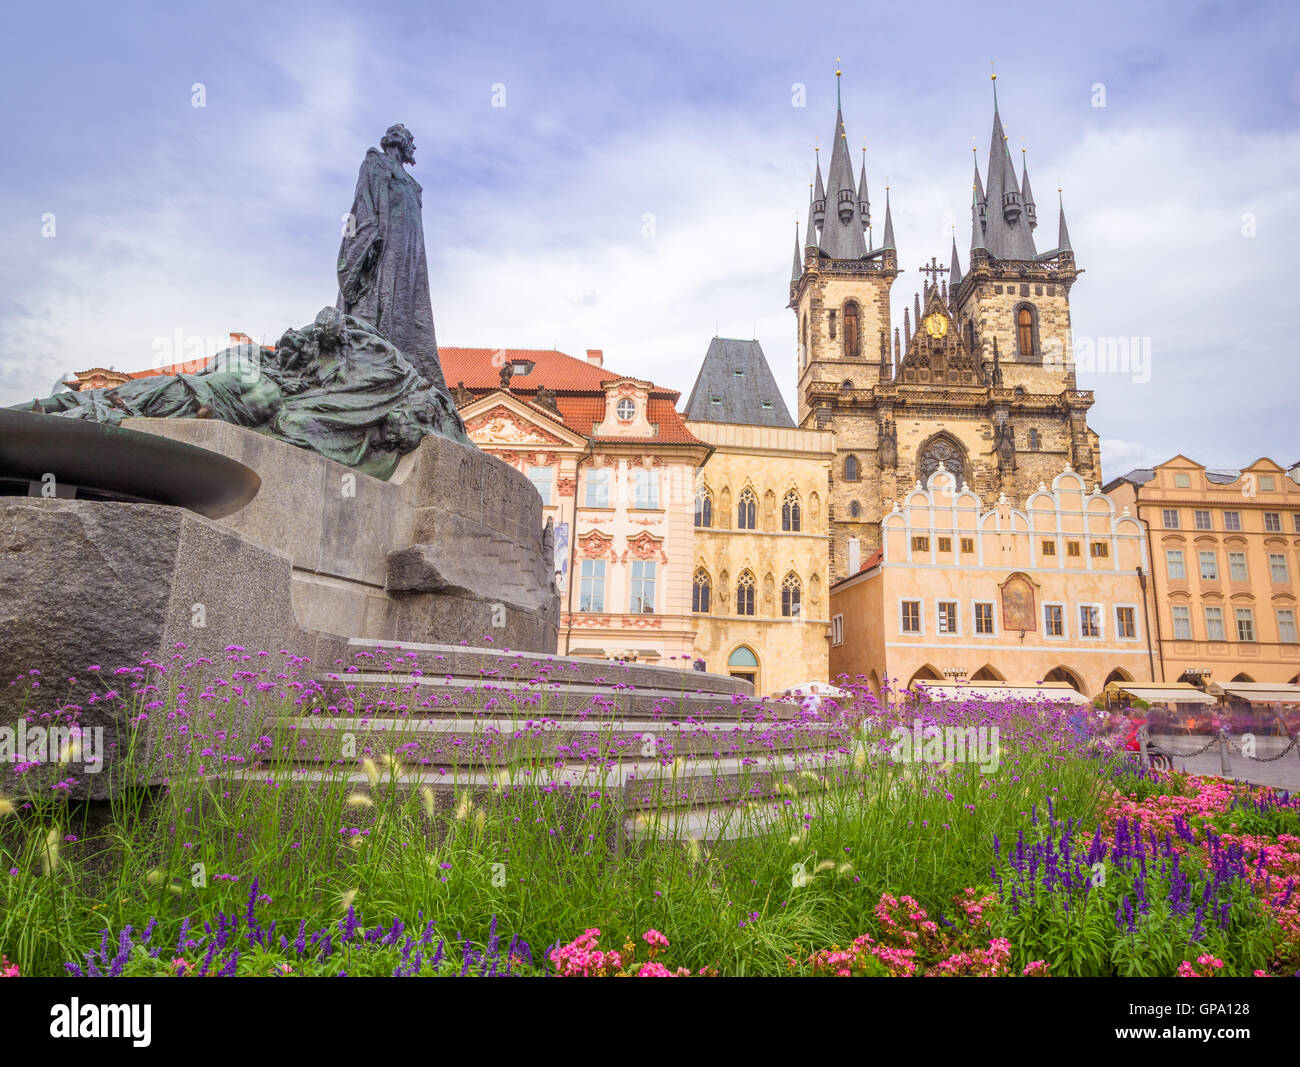 Der Altstädter Ring ist der größte Platz in Prag, Tschechien. Es beherbergt einige der berühmten Sehenswürdigkeiten wie die Kirche Stockfoto